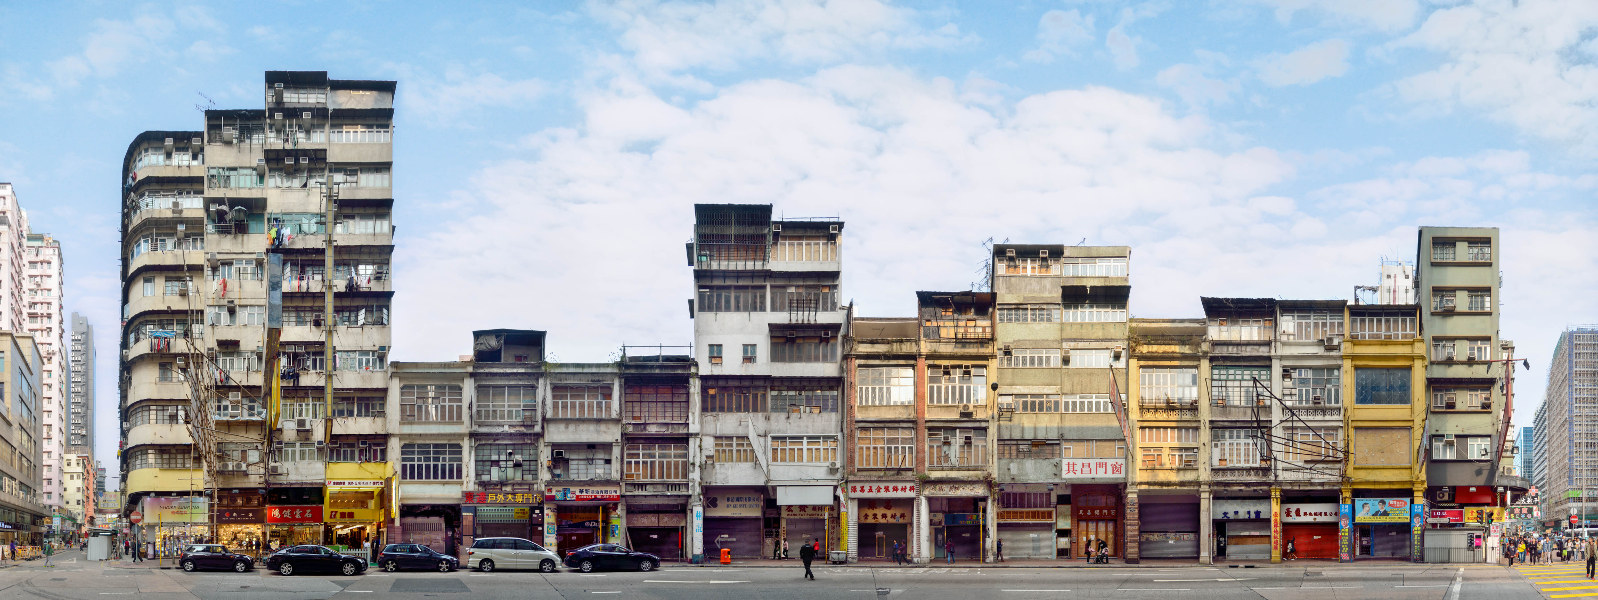 Hong Kong Shanghai Street China Architecture Photography